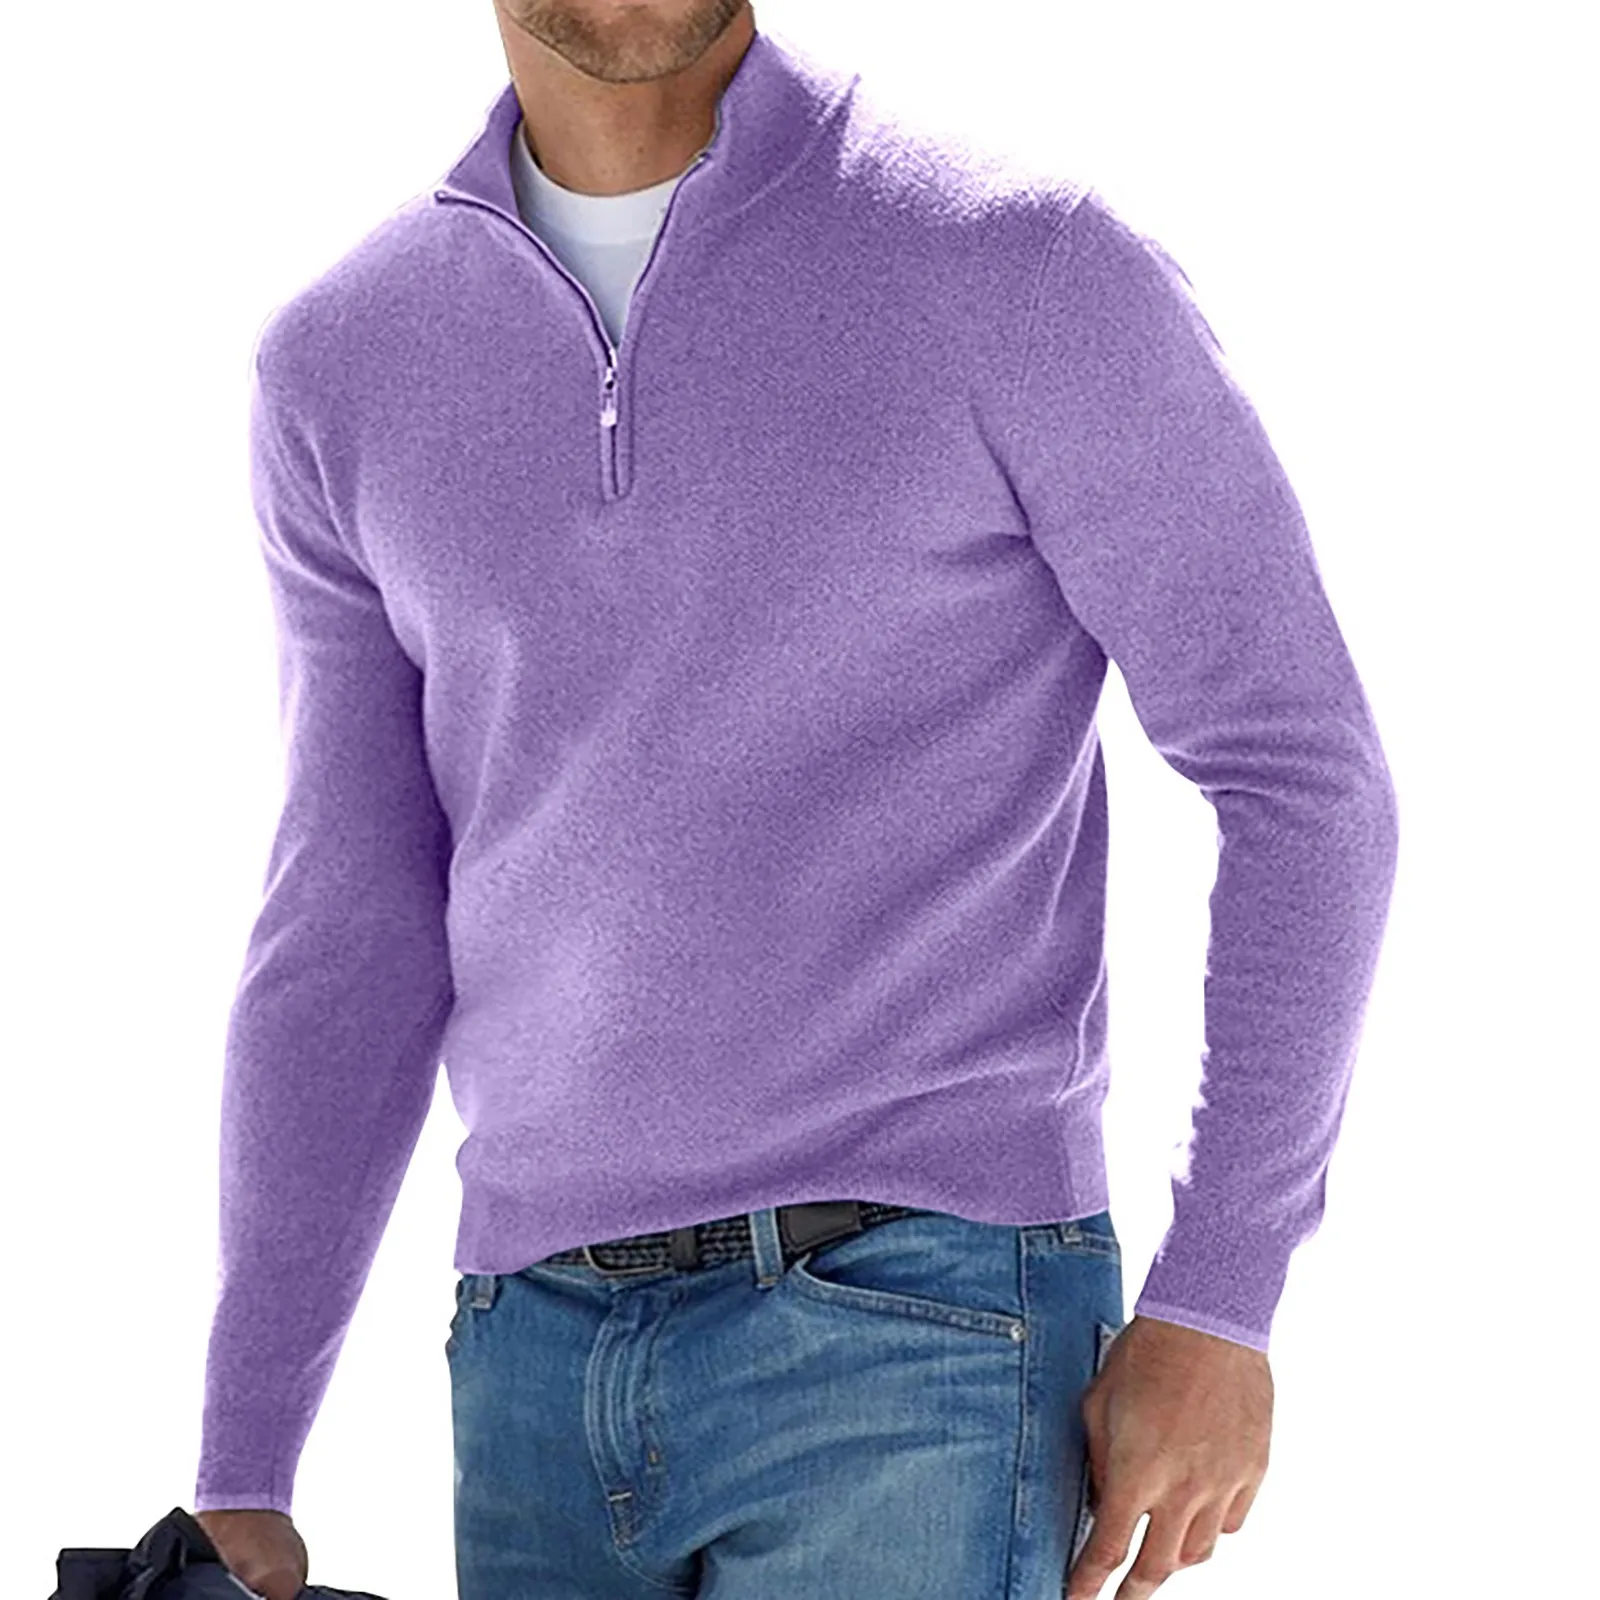 

Мужская теплая трикотажная водолазка, однотонный пуловер с длинным рукавом, теплый флисовый свитер на молнии, удобная одежда на осень и зиму